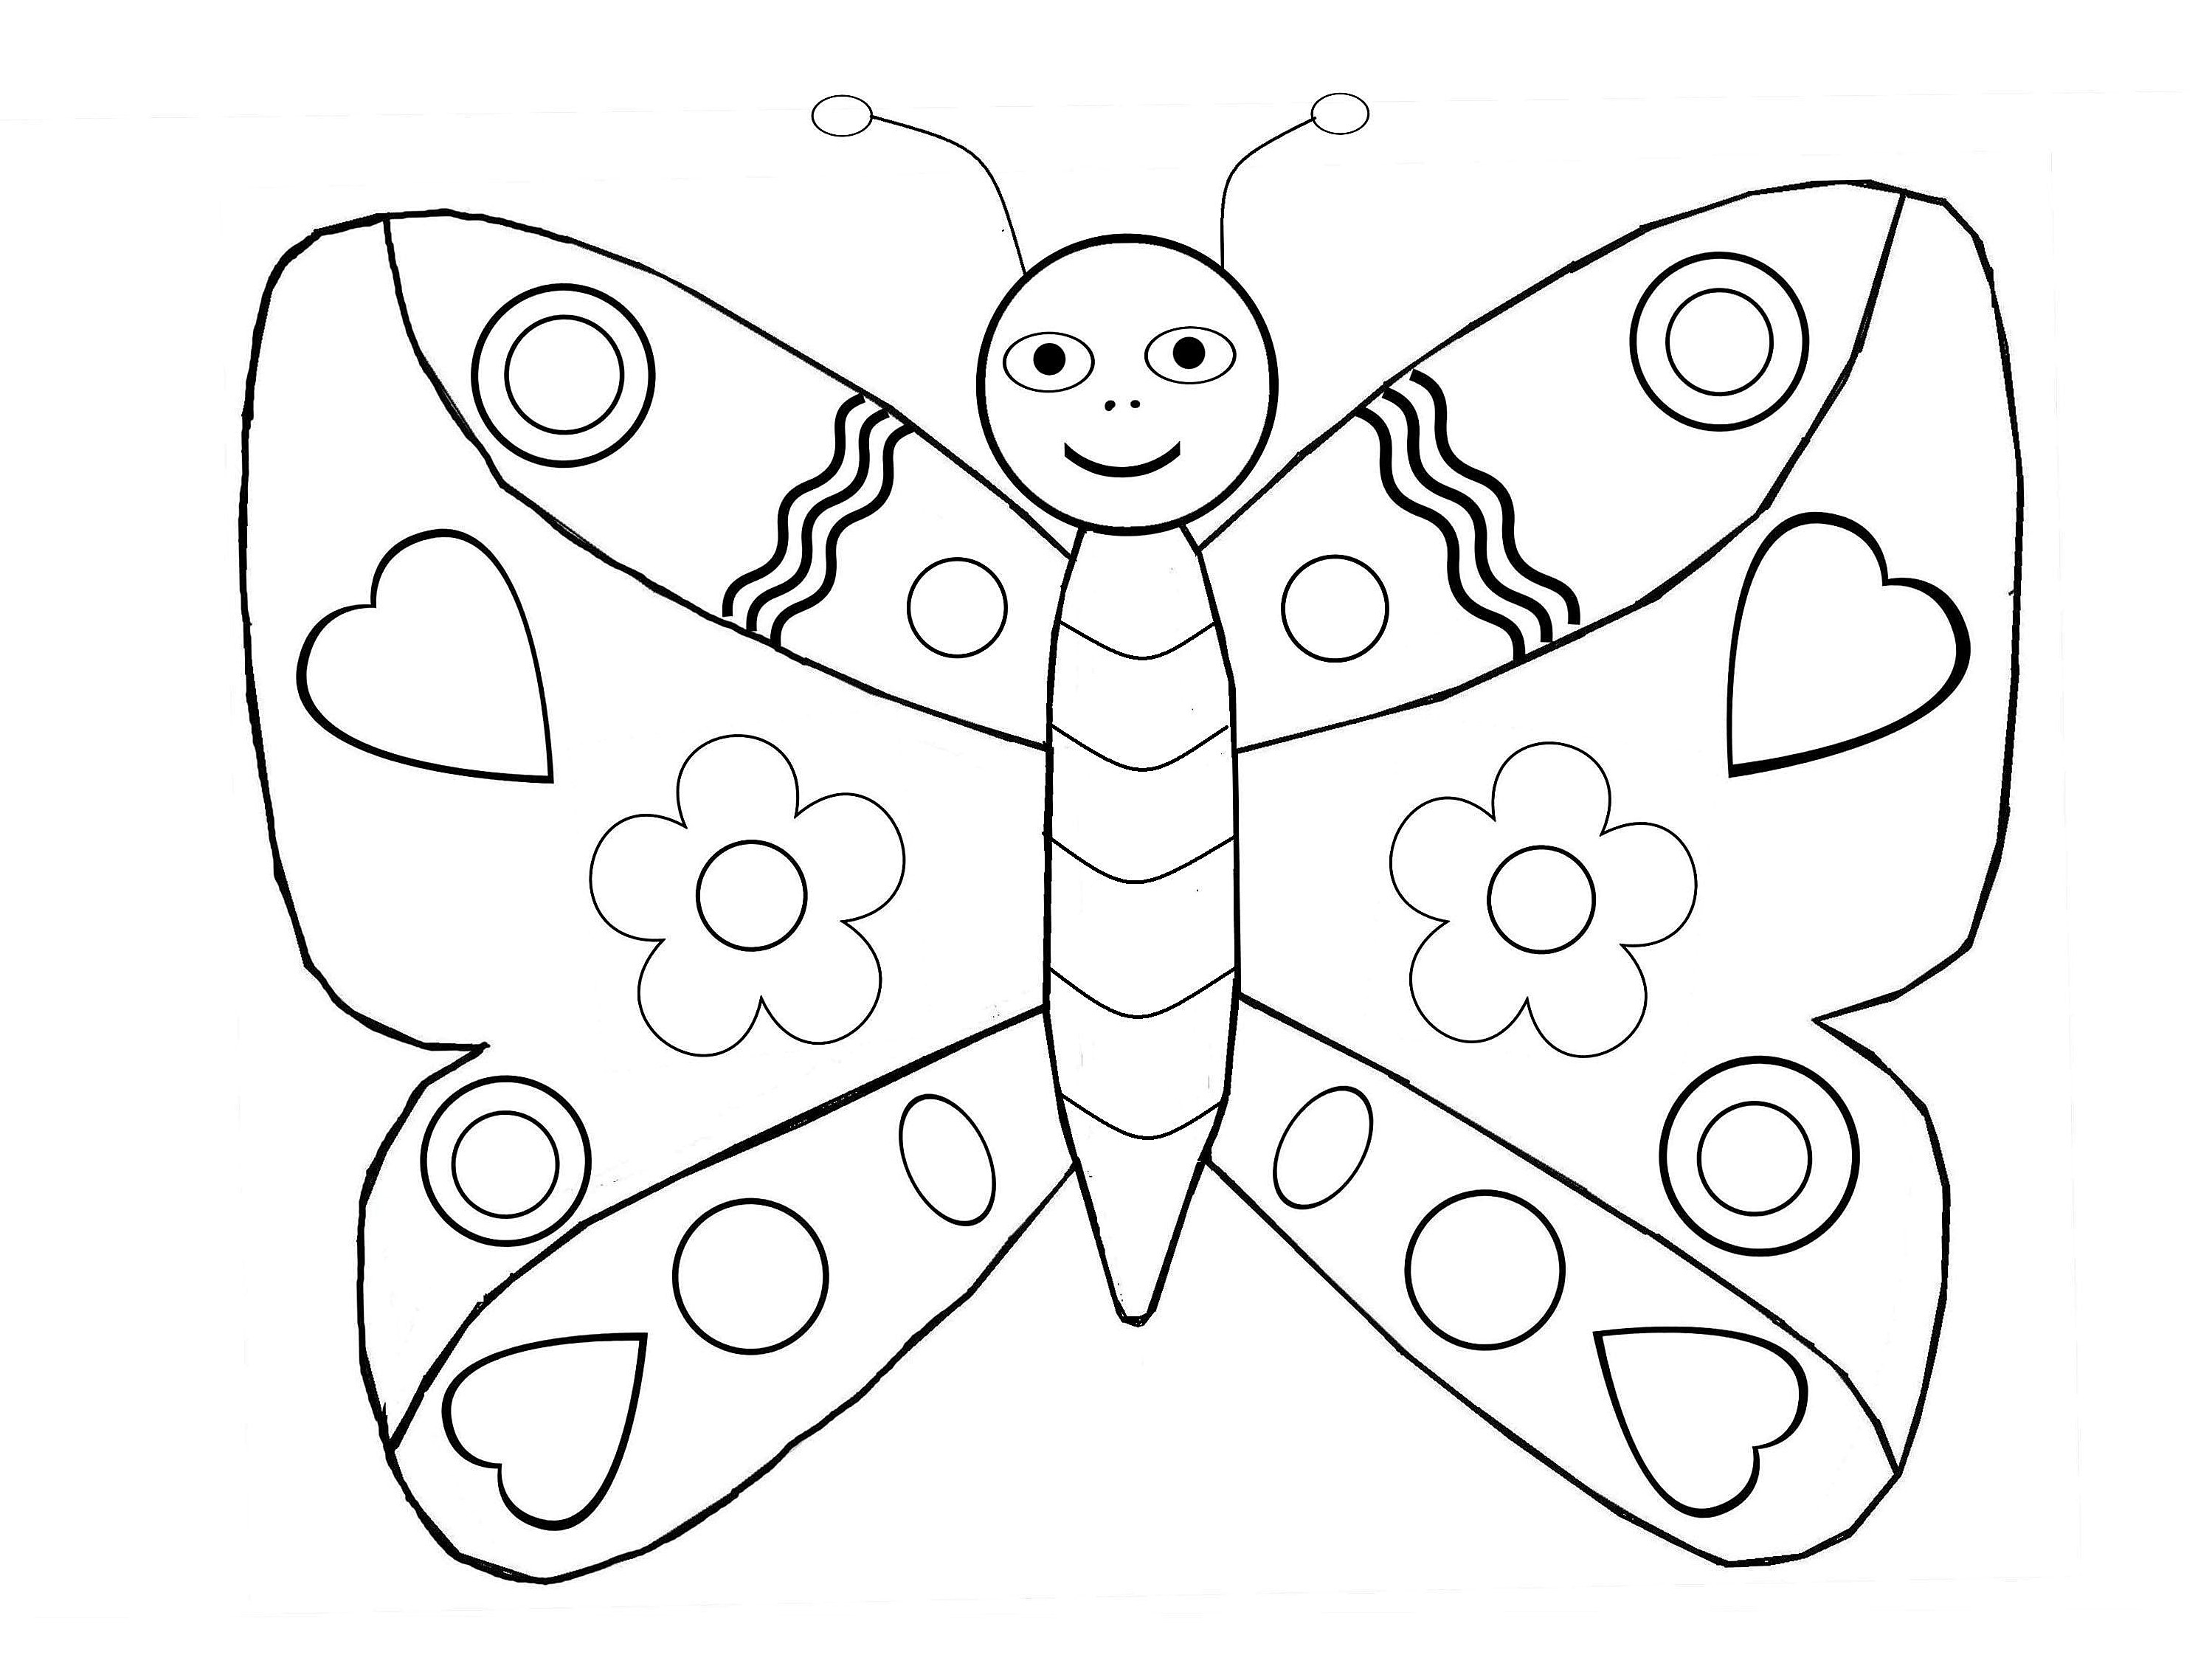 Papillons 4 - Coloriage de Papillons - Coloriages pour enfants